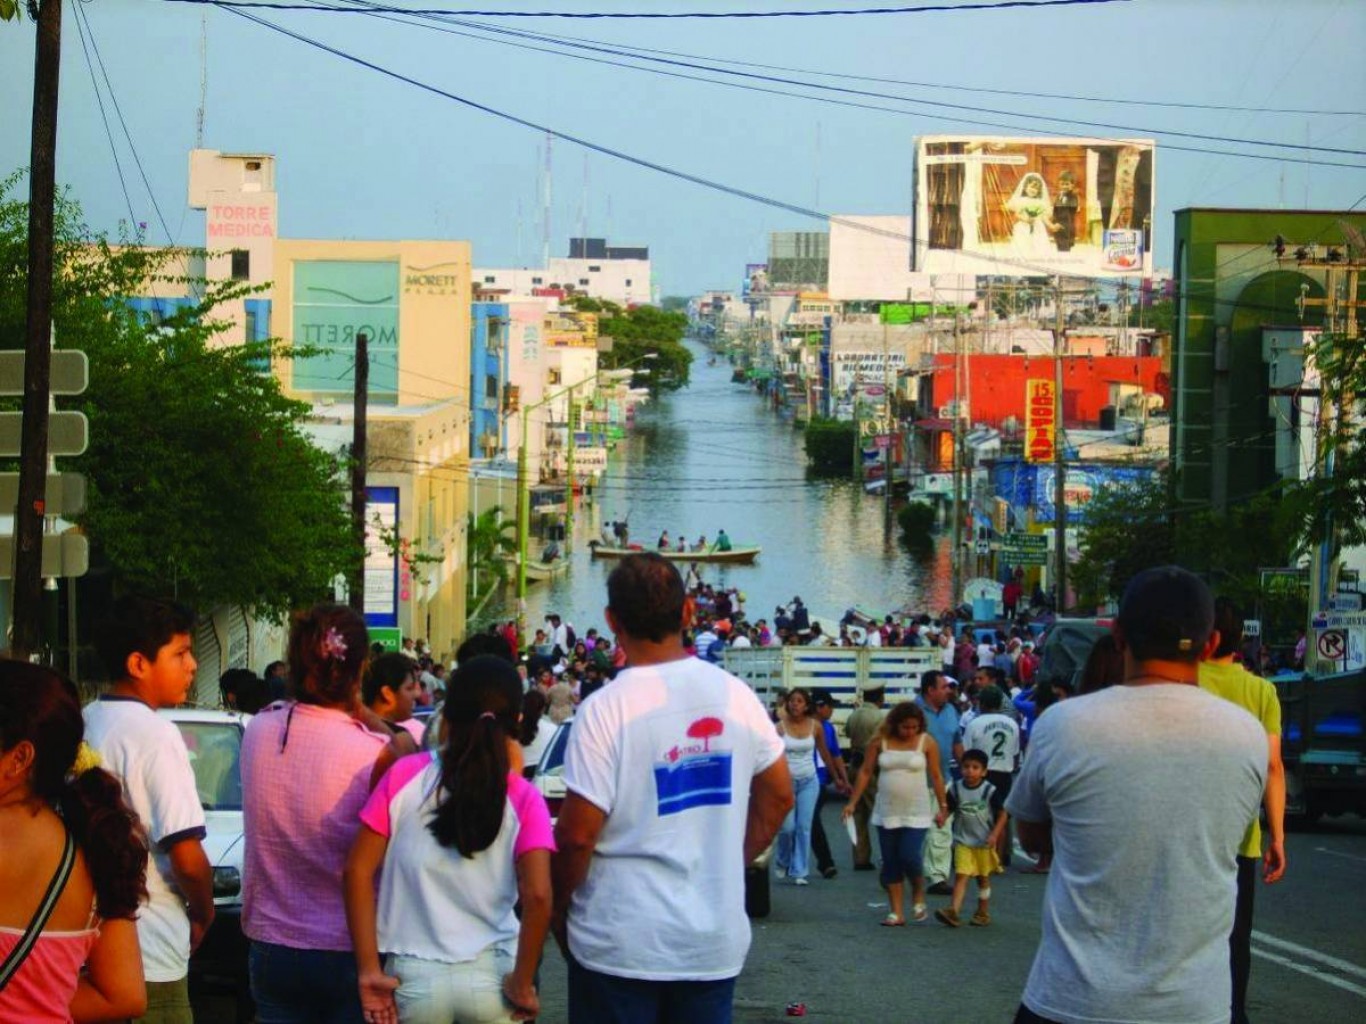 Lluvias en pandemia, comienza reto en México y Centroamérica